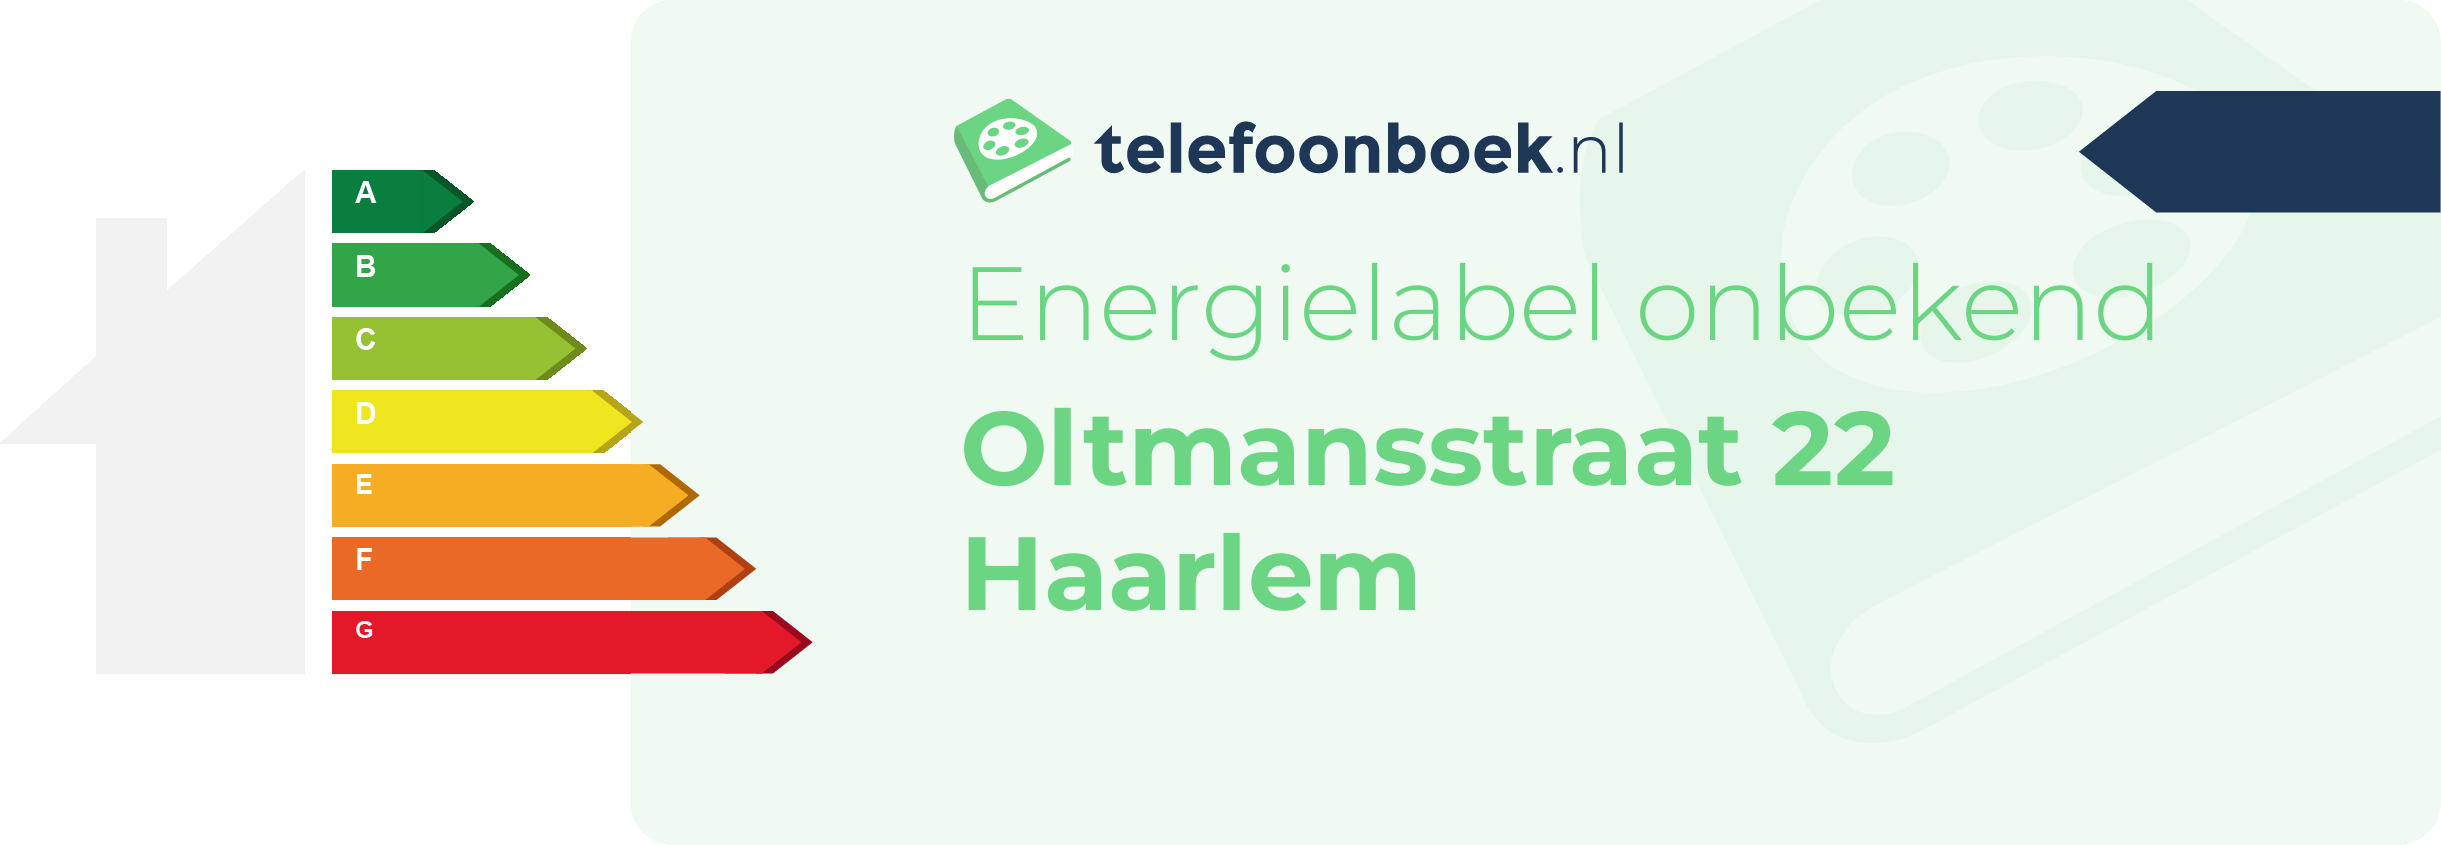 Energielabel Oltmansstraat 22 Haarlem